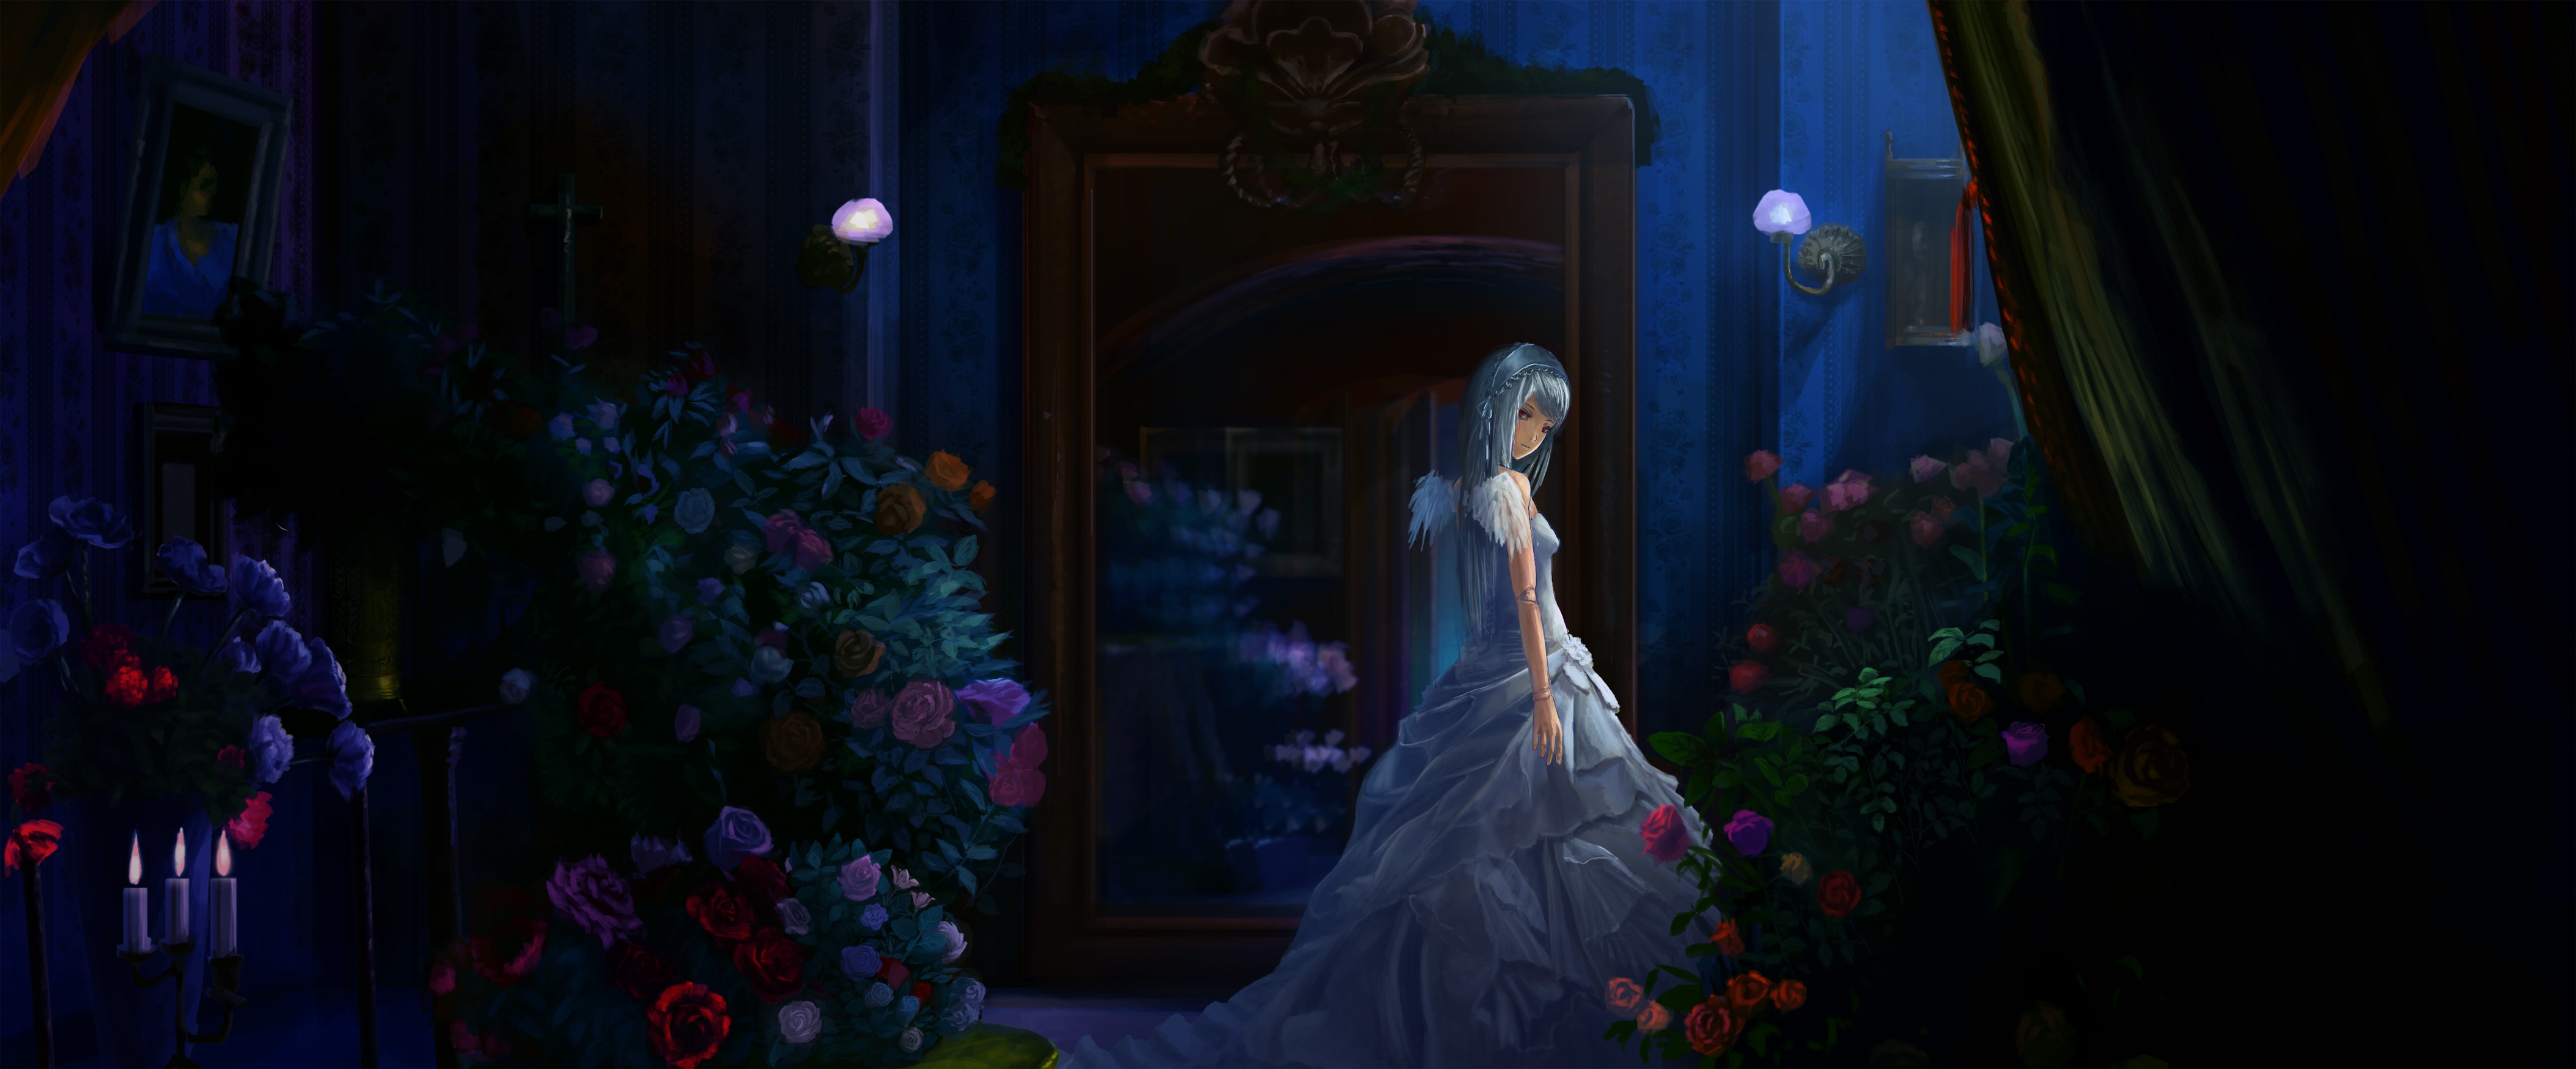 Anime 4214x1748 Rozen Maiden anime girls anime flowers dark room women women indoors dress fantasy girl fantasy art standing blue hair